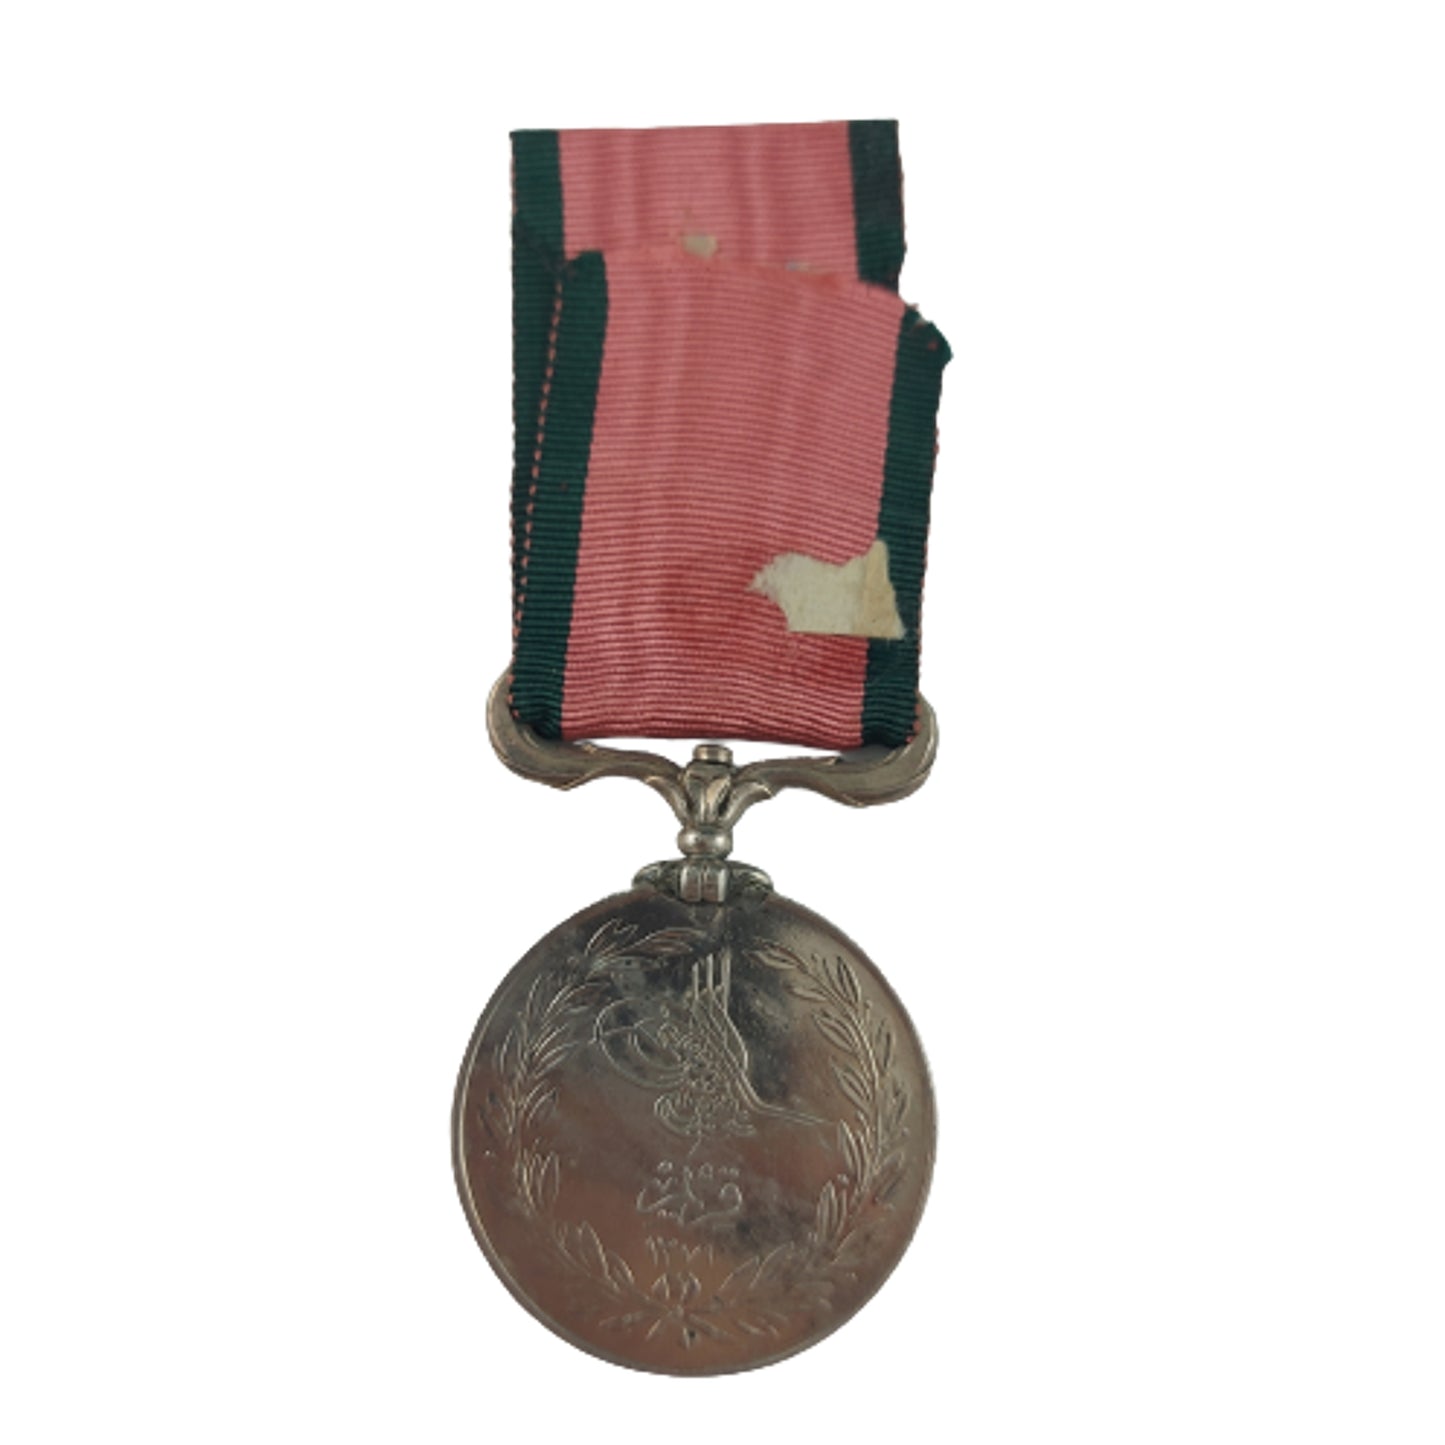 1855 Turkish Crimea War Medal